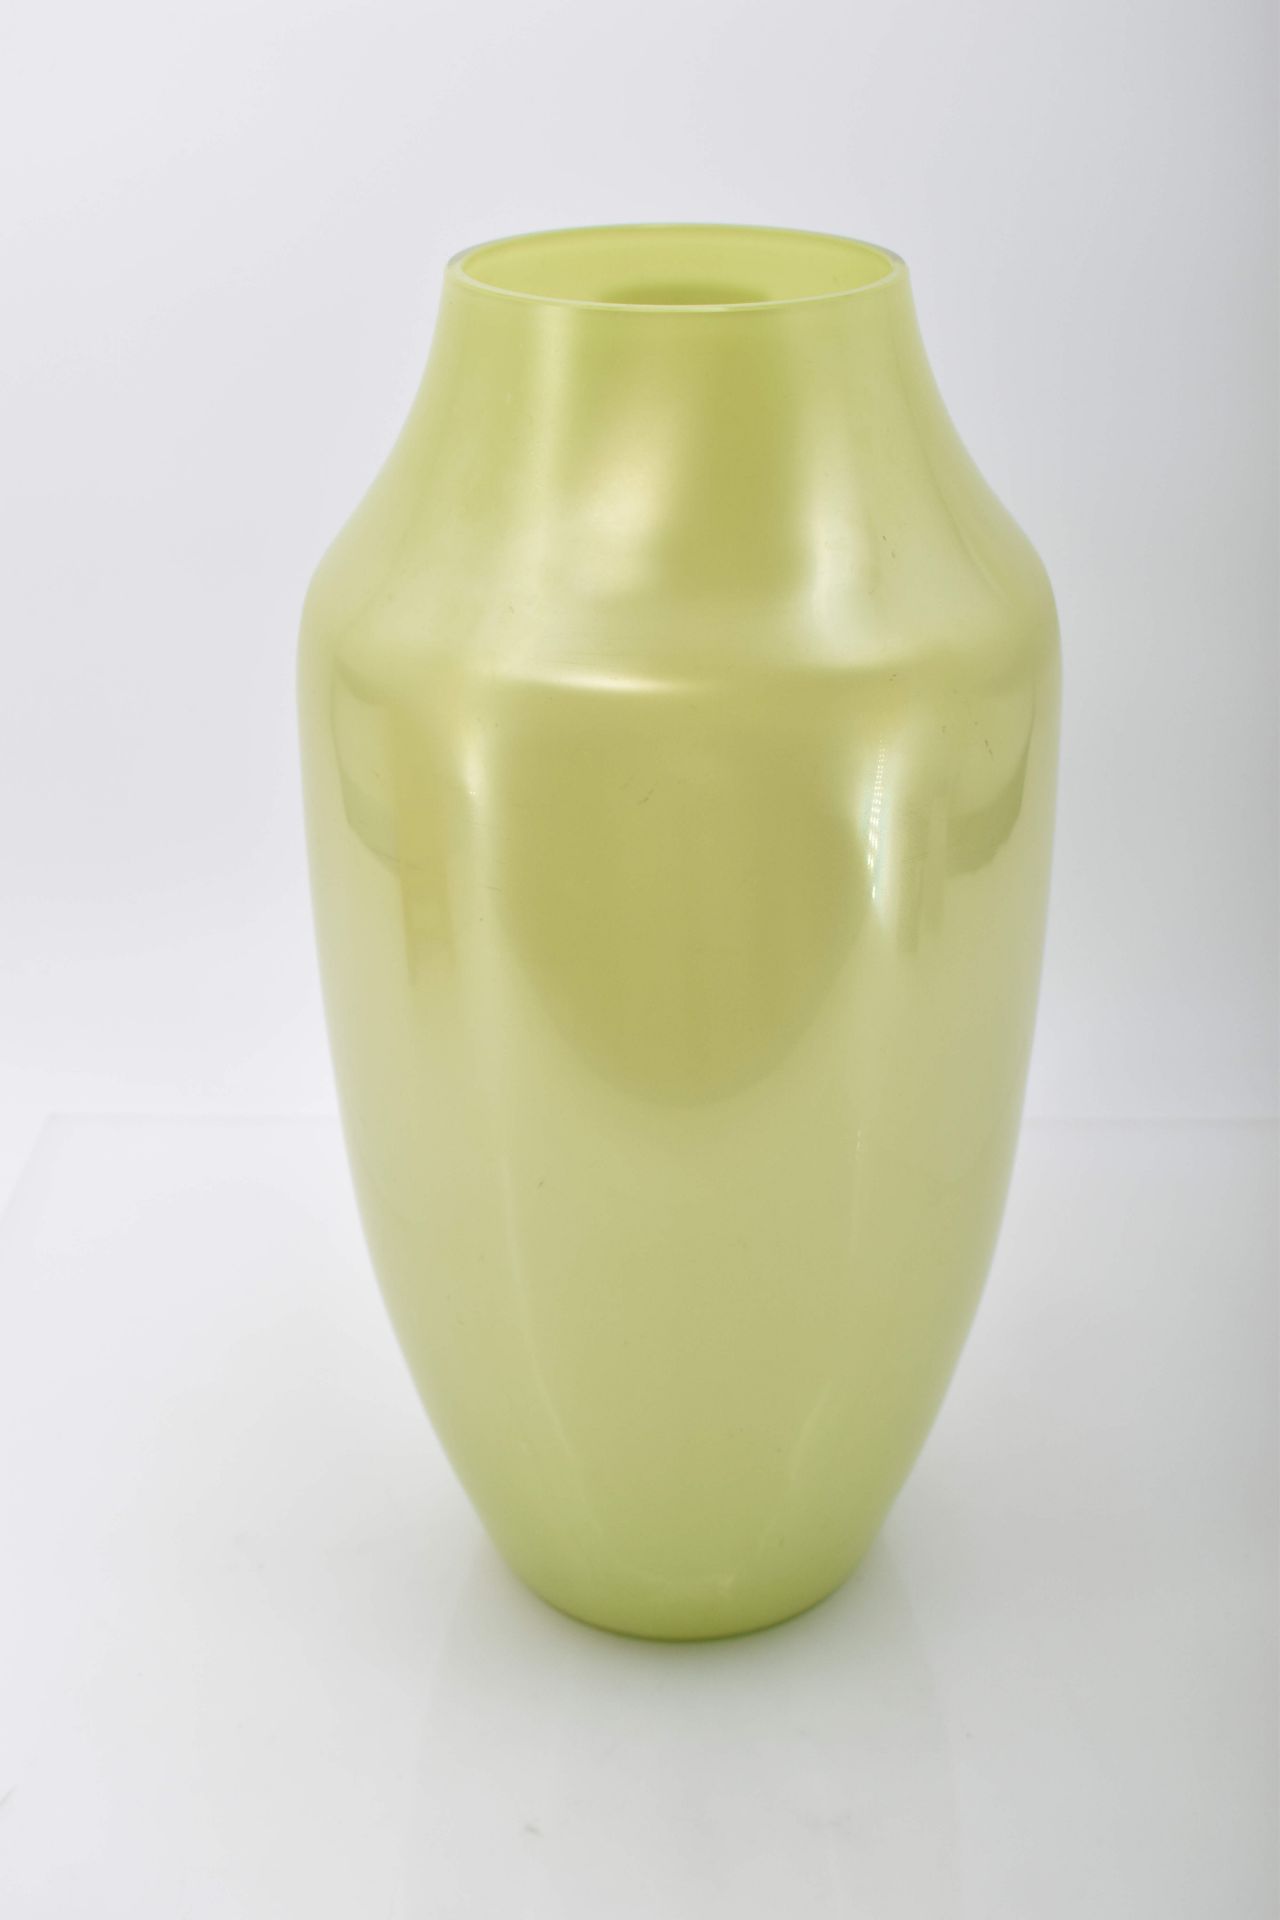 Hohe Vase in der Art von Loetz, A. 20. Jh. - Image 3 of 11